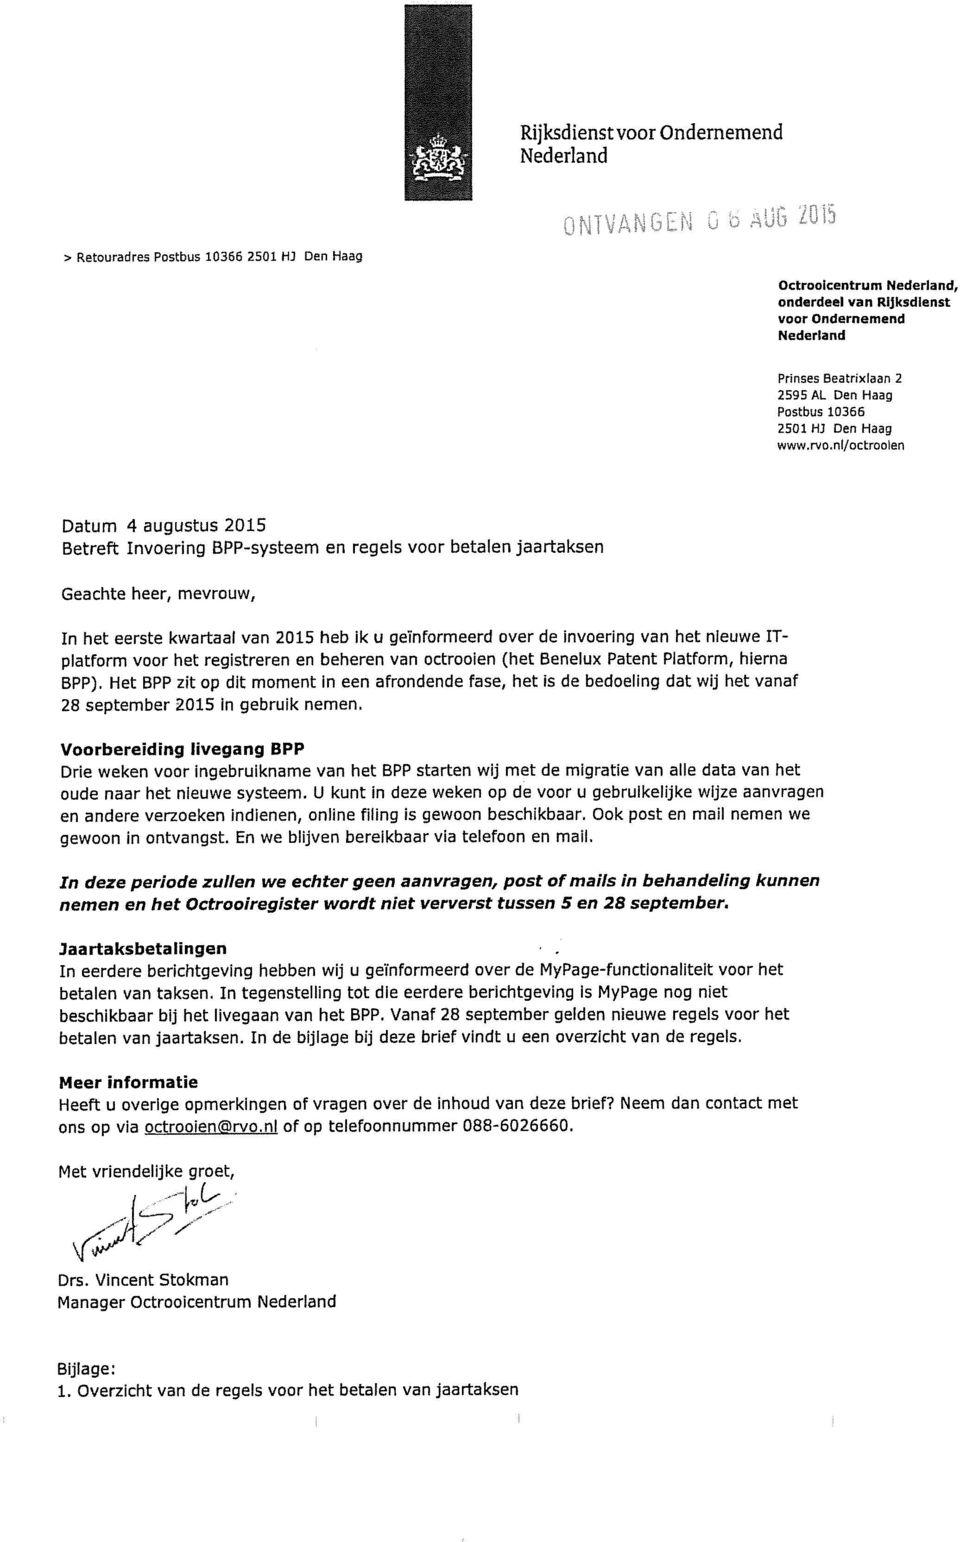 rvo,nl/octroolen Datum 4 augustus 2015 Betreft Invoering BPP-systeem en regels voor betalen jaartaksen Geachte heet, mevrouw, In het eerste kwartaal van 2015 heb ik u geïnformeerd over de invoering